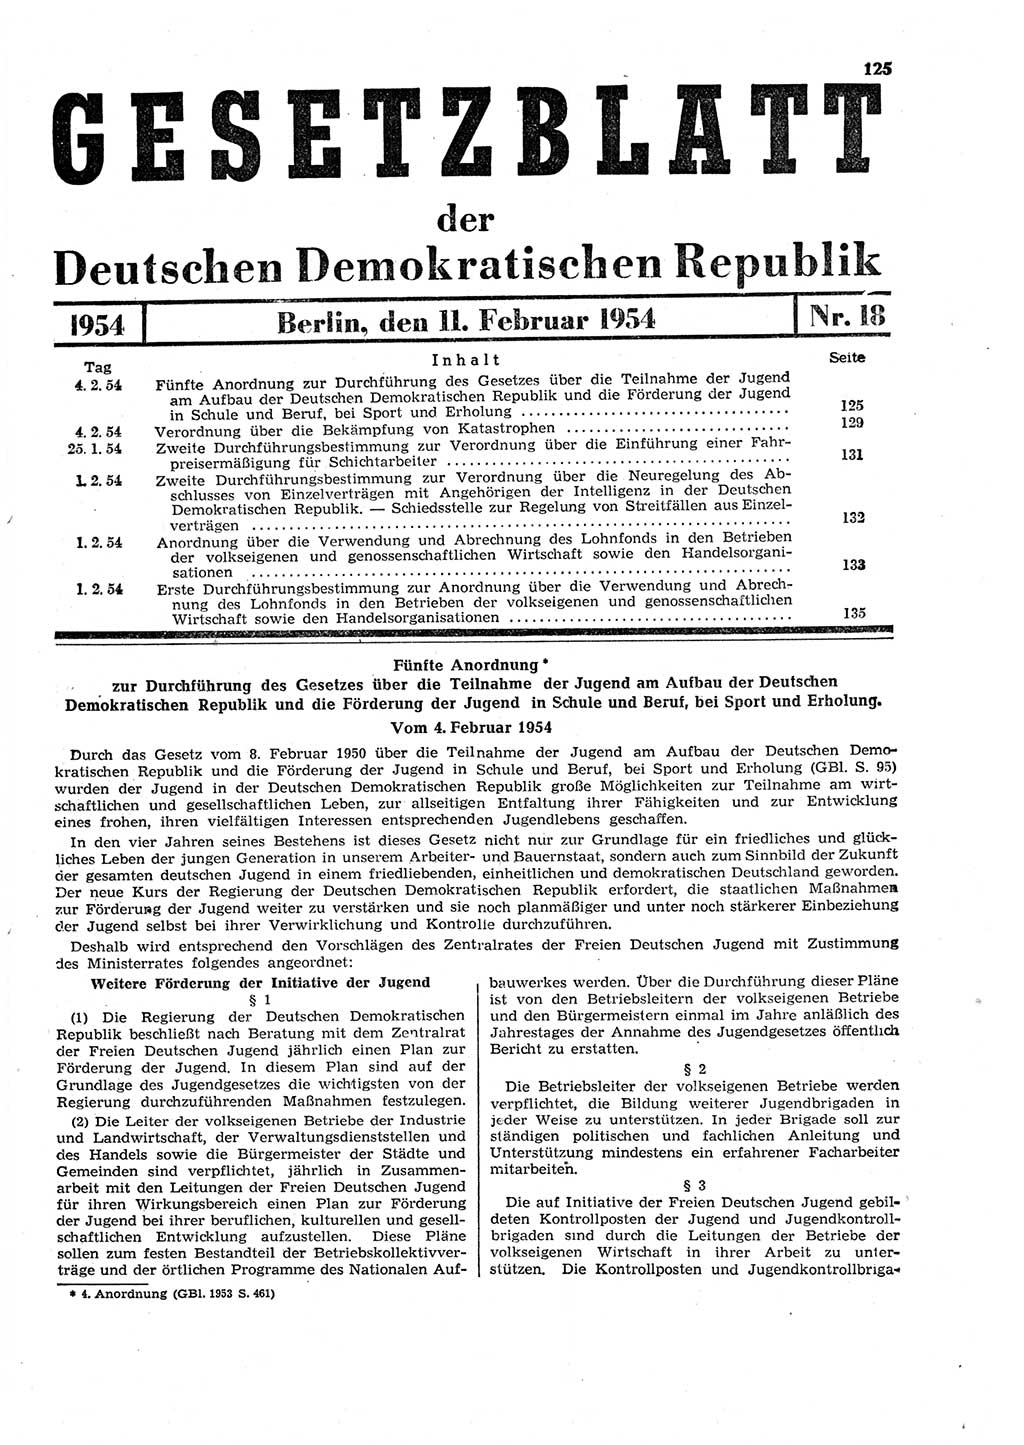 Gesetzblatt (GBl.) der Deutschen Demokratischen Republik (DDR) 1954, Seite 125 (GBl. DDR 1954, S. 125)